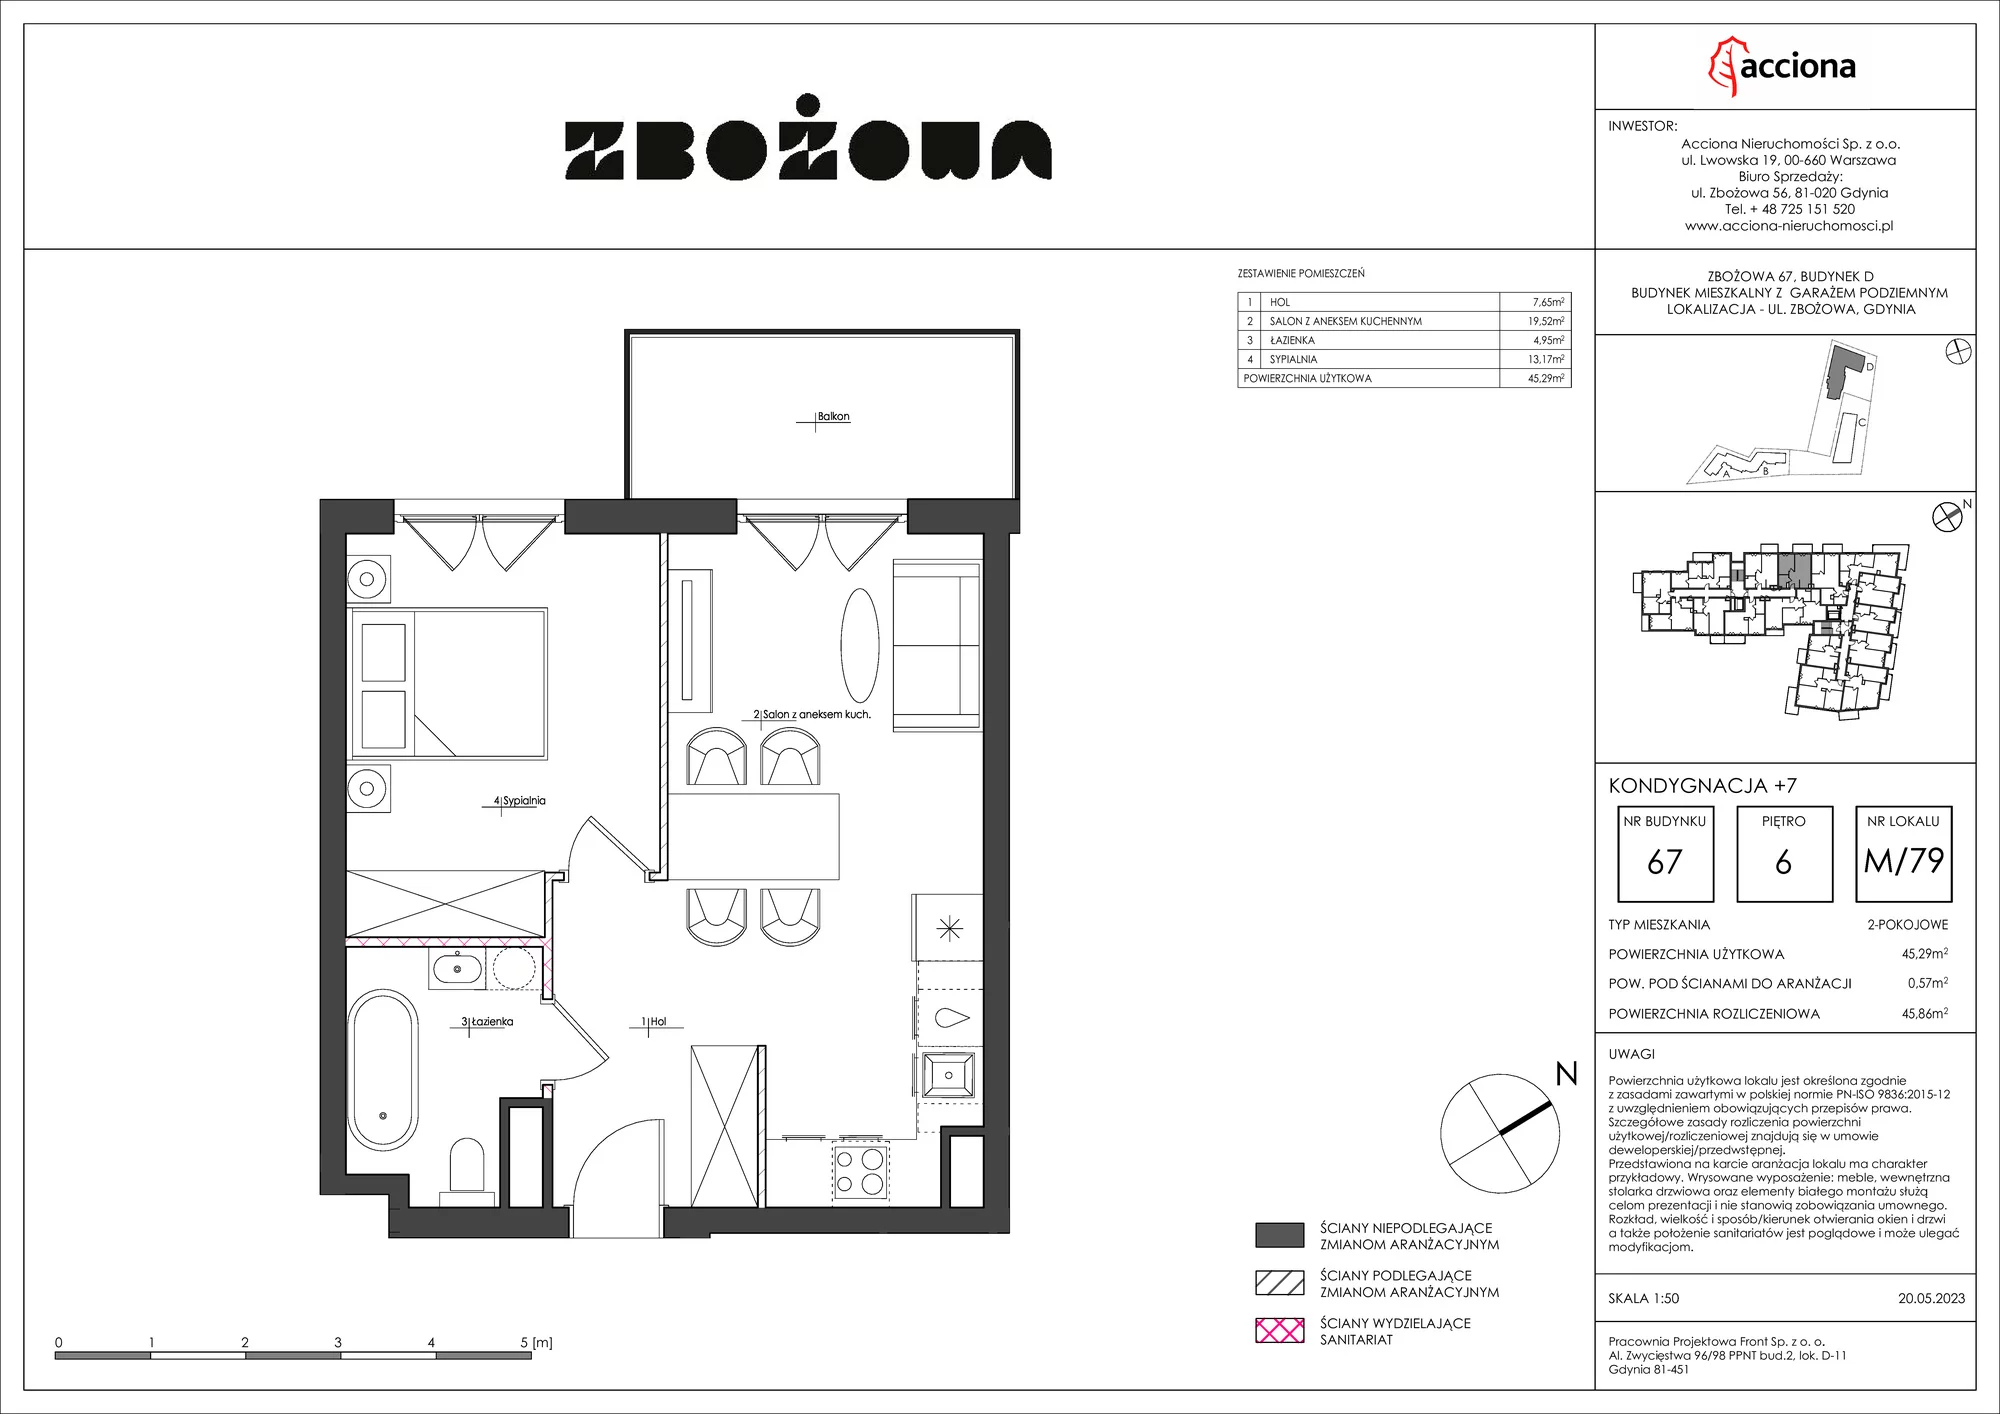 Mieszkanie 45,86 m², piętro 6, oferta nr 67.79, Zbożowa, Gdynia, Cisowa, ul. Zbożowa